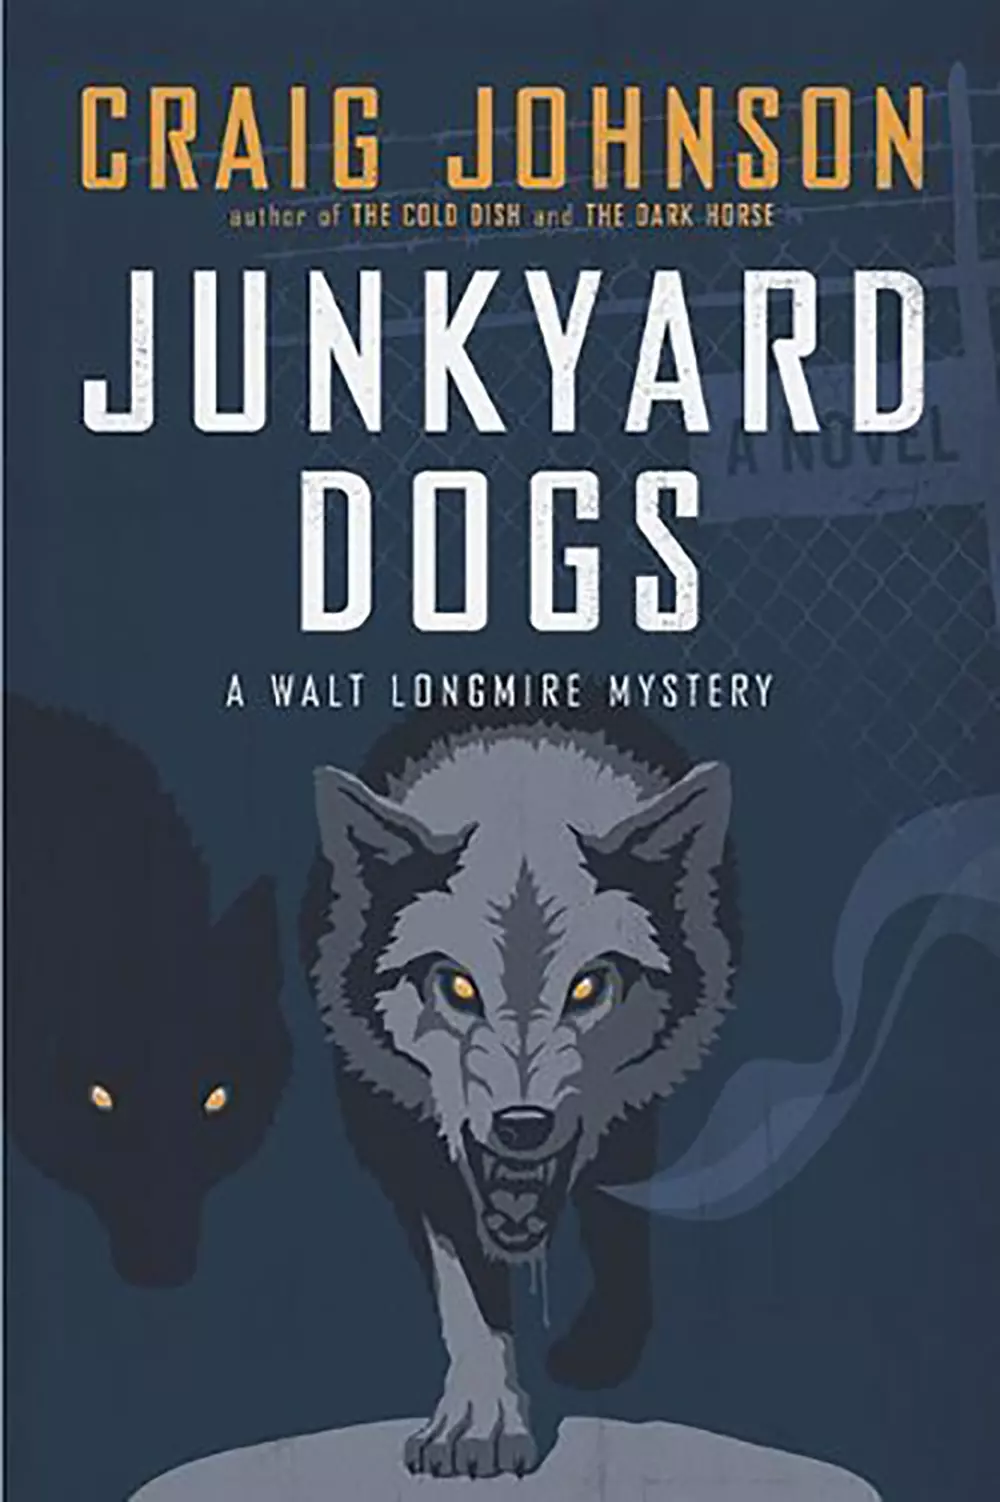 Junkyard Dogs, Johnson's sixth book.